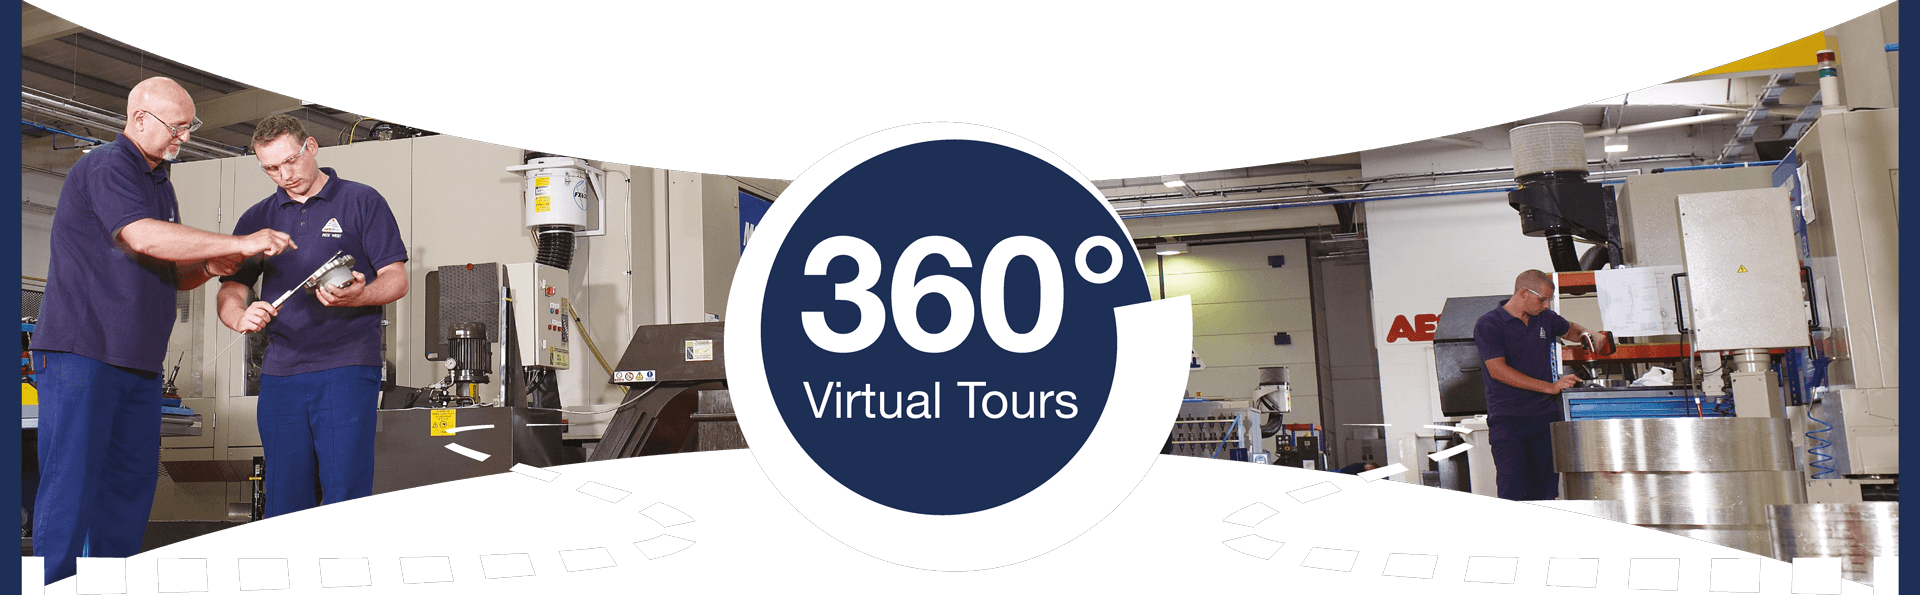 360虚拟旅游横幅